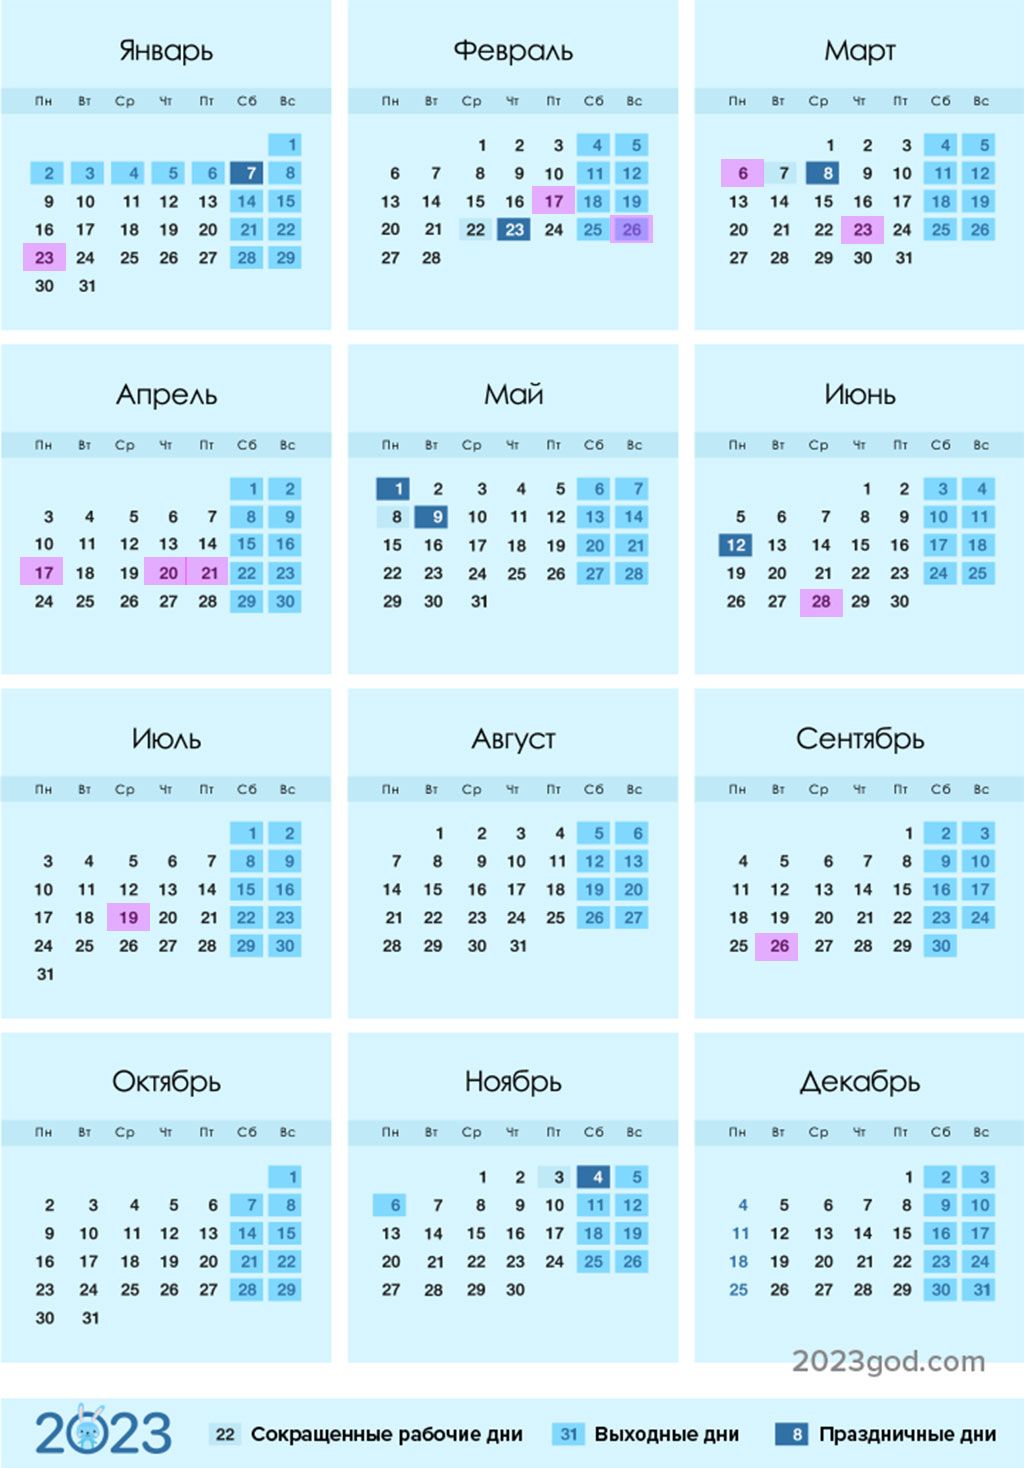 Мусульманские праздники в 2023 году: календарь